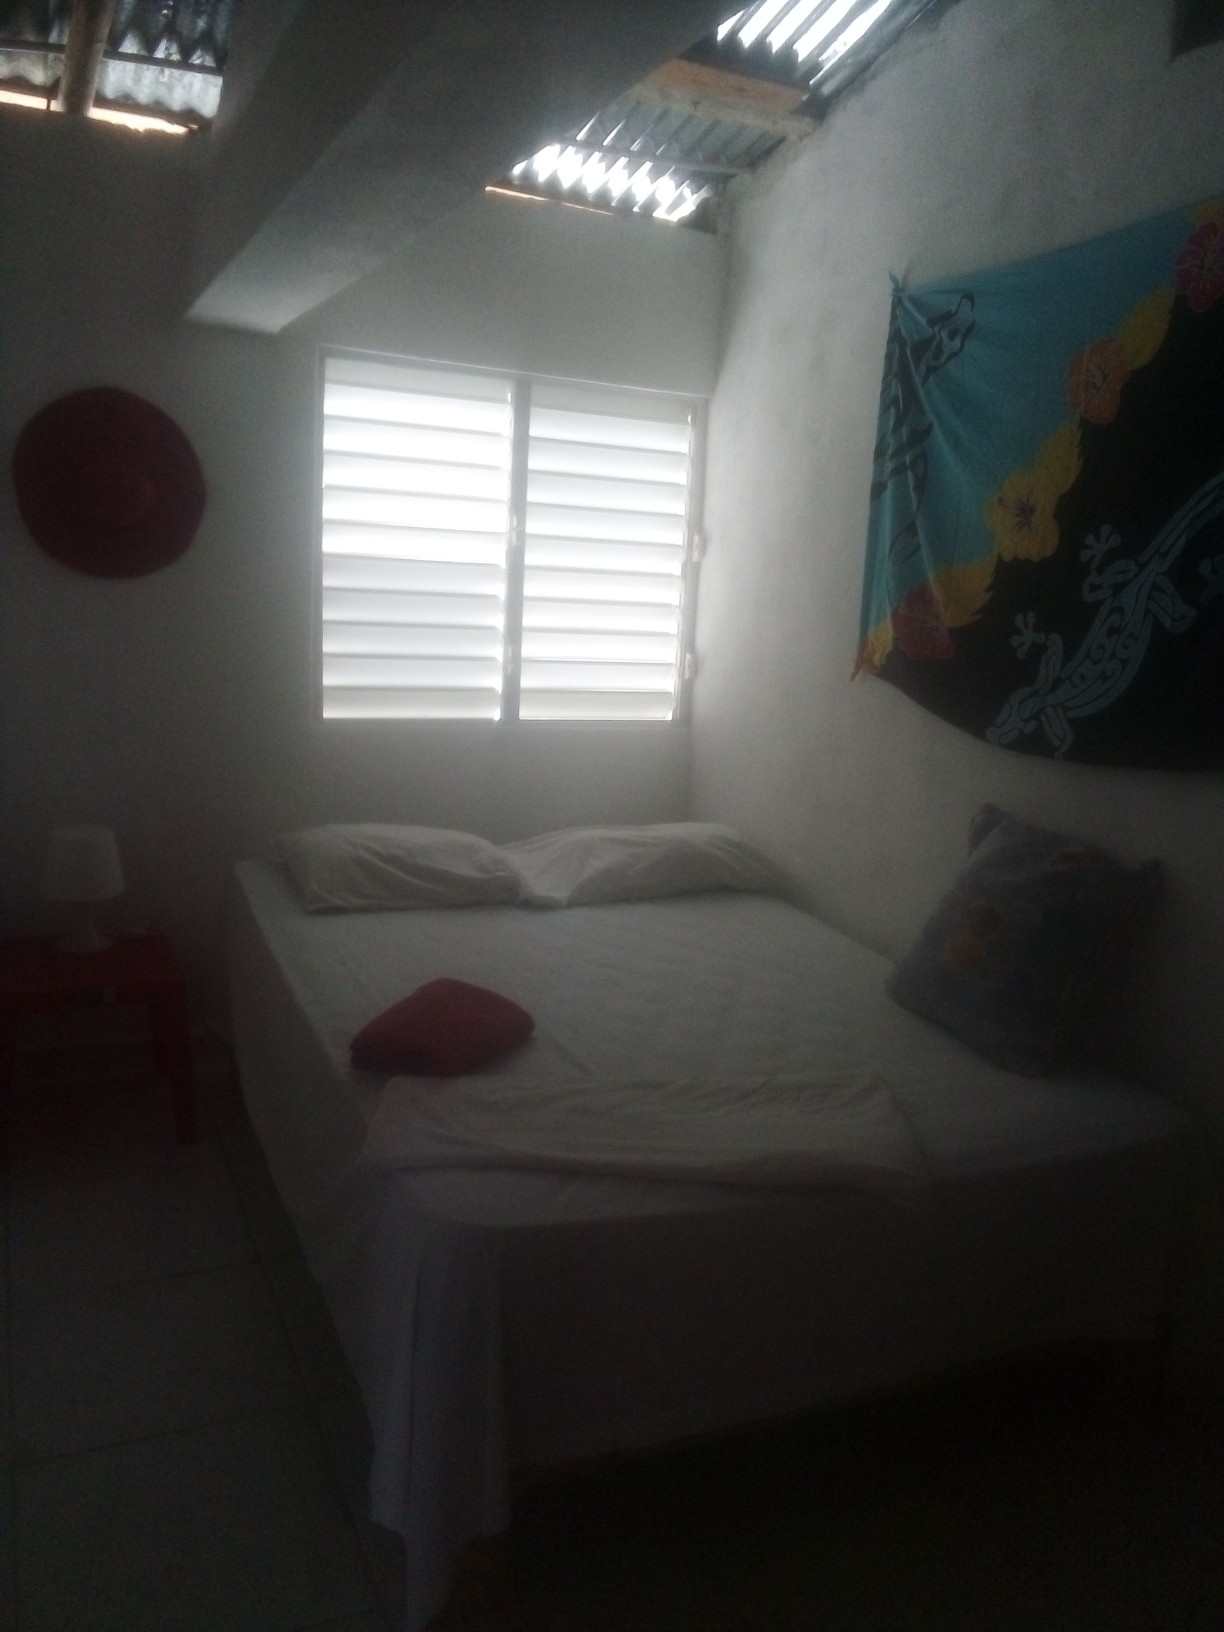 habitaciones y viviendas compartidas - Se alquila habitación en Palma de ocoa